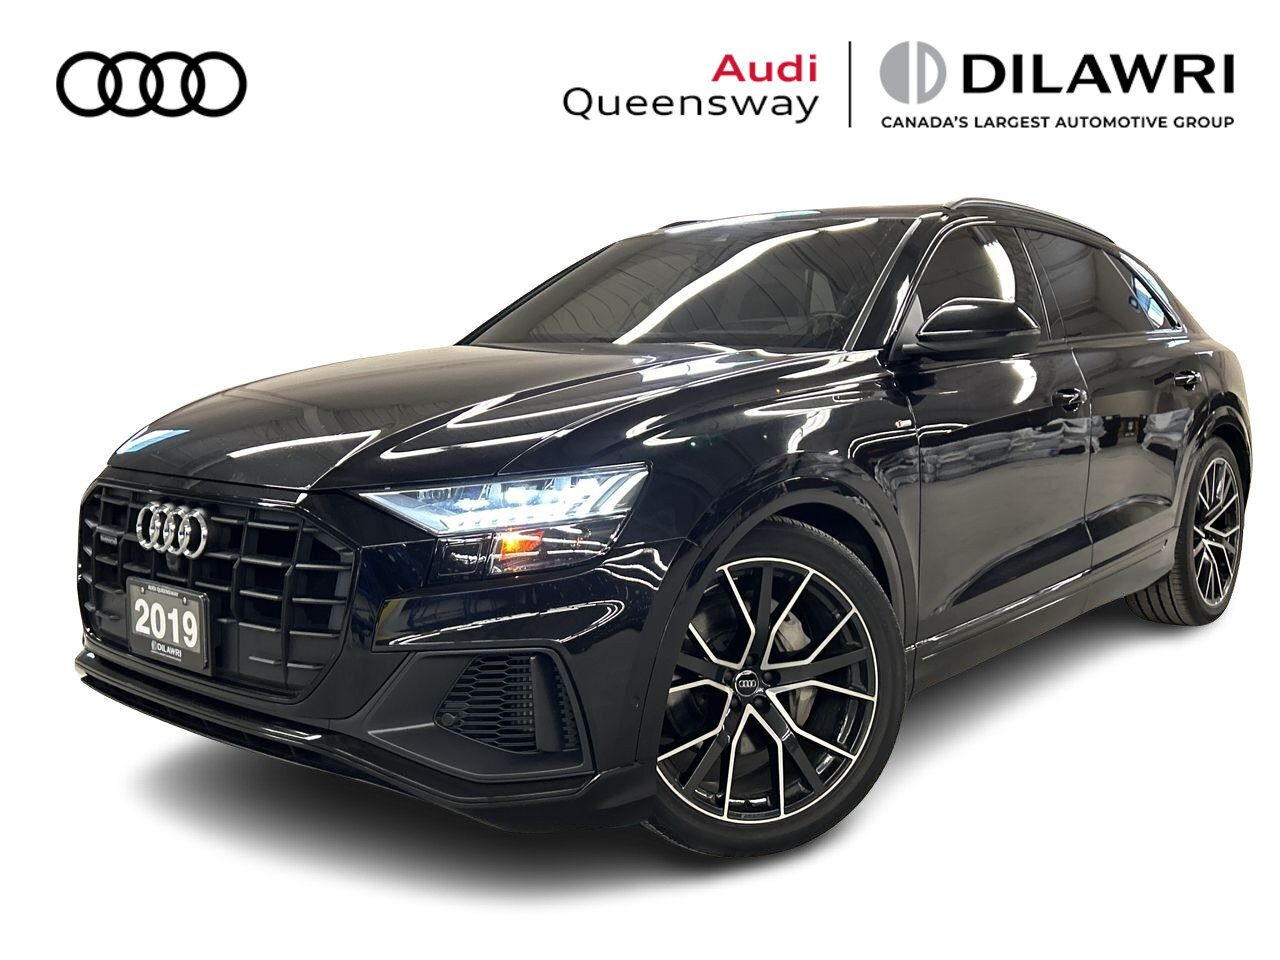 2019 Audi Q8 3.0T Technik quattro 8sp Tiptronic | Black Optics 